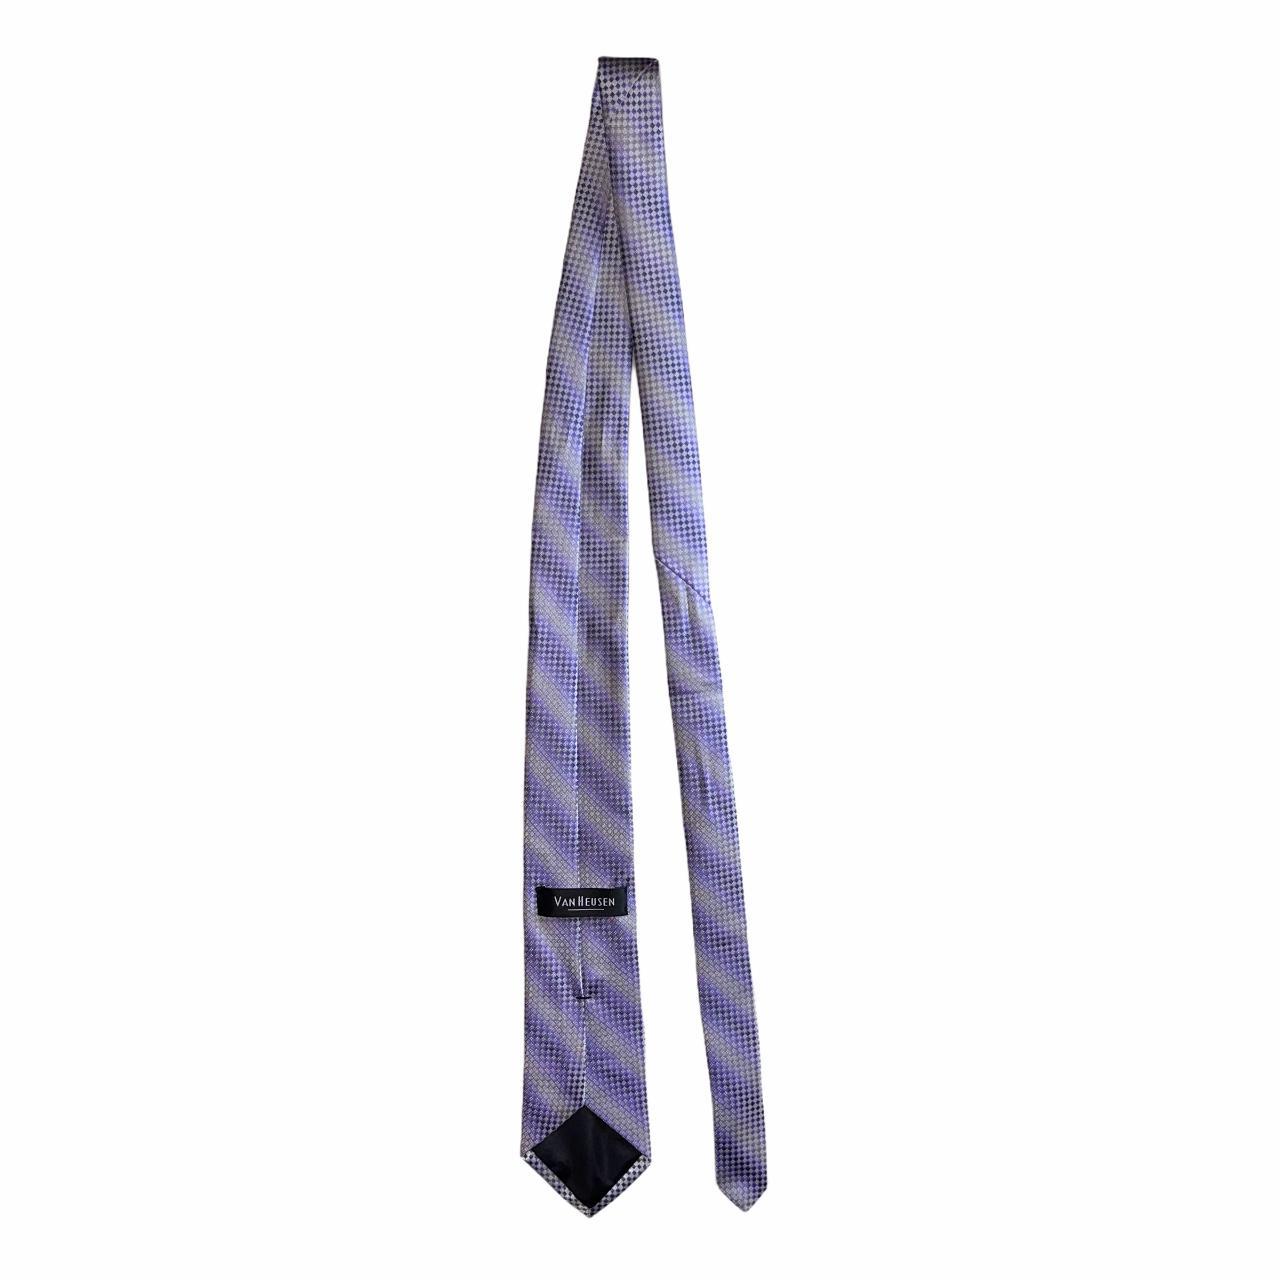 Product Image 3 - Brand: Van Heusen
Type: Tie
Style: Necktie
Color: